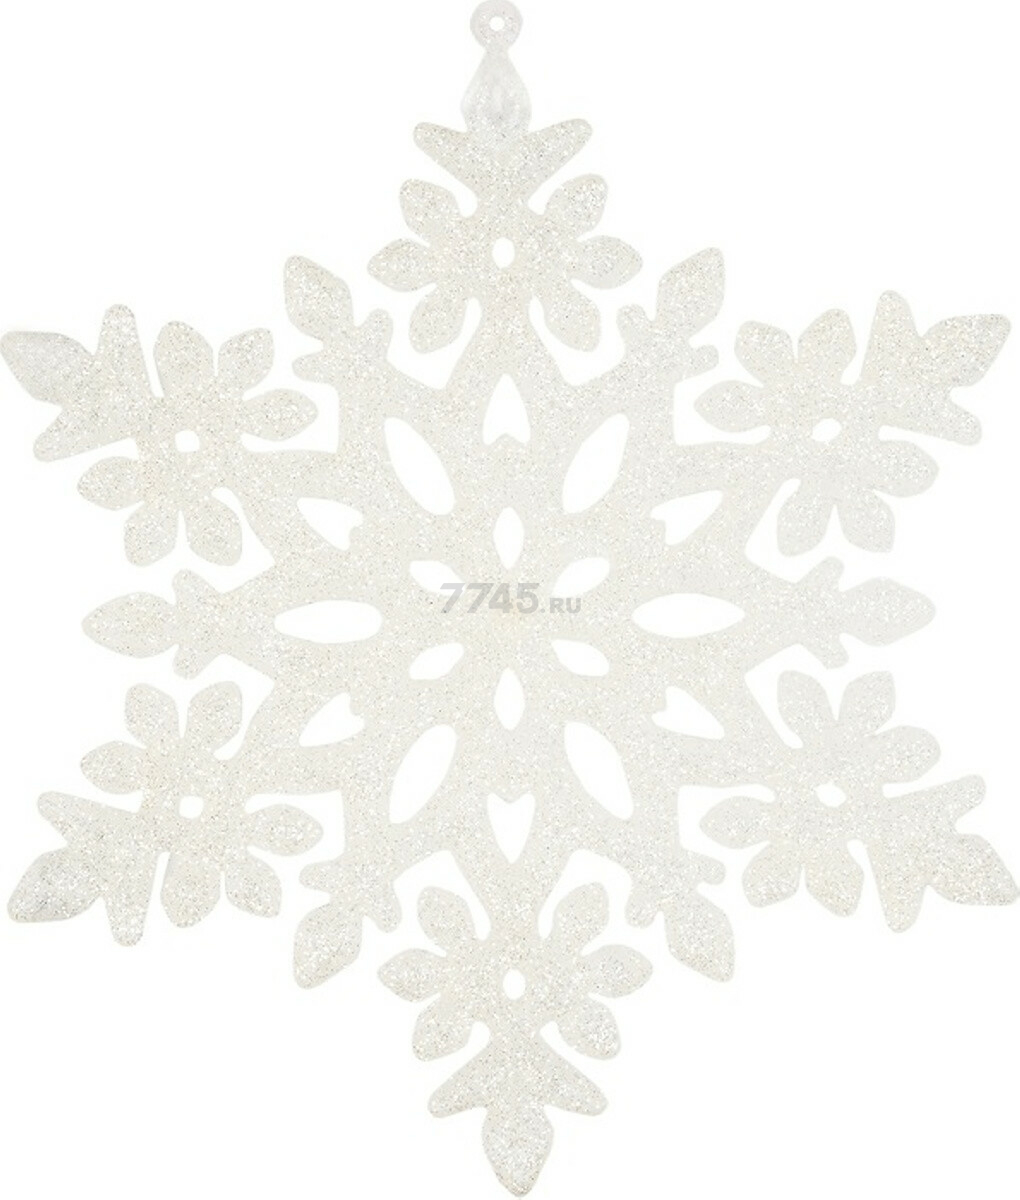 Игрушка елочная МОРОЗКО Снежинка хрустальная белый 15 см (СПГ150004)